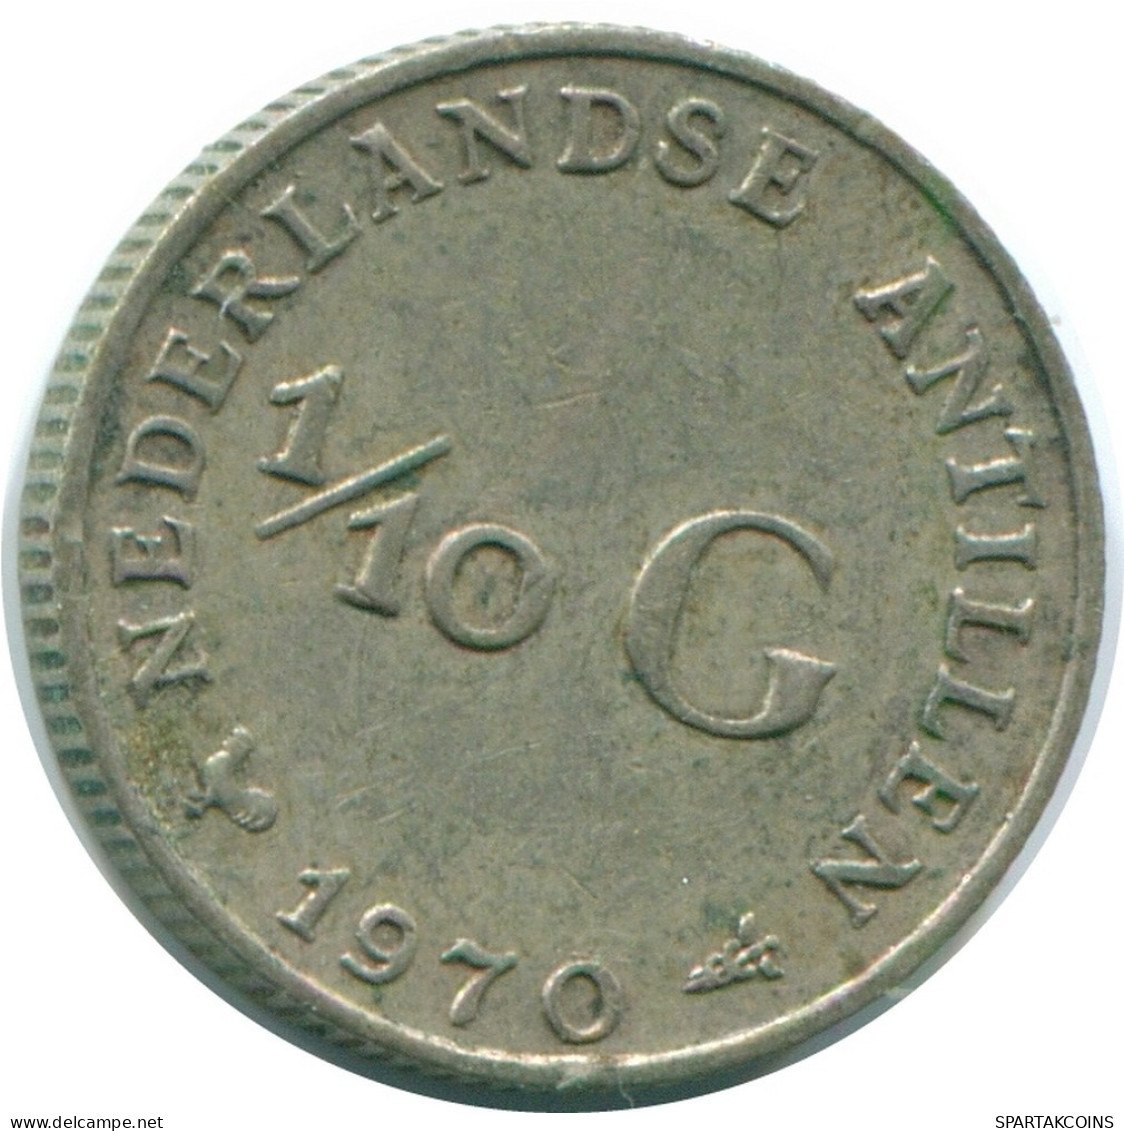 1/10 GULDEN 1970 NIEDERLÄNDISCHE ANTILLEN SILBER Koloniale Münze #NL13113.3.D.A - Antillas Neerlandesas